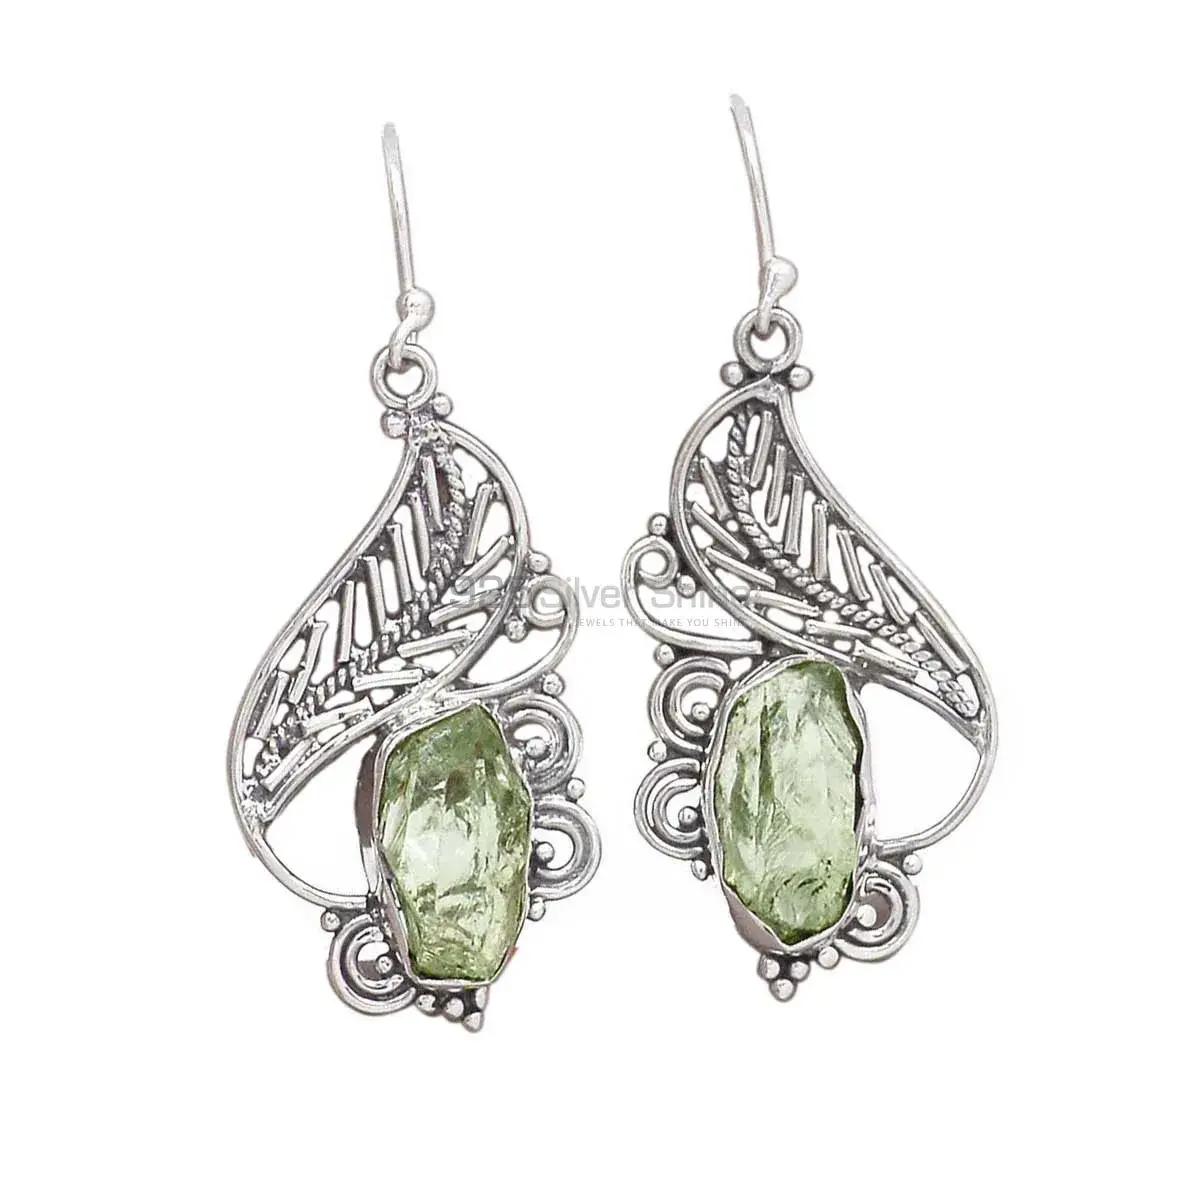 Unique 925 Sterling Silver Earrings Wholesaler In Green Amethyst Gemstone Jewelry 925SE2950